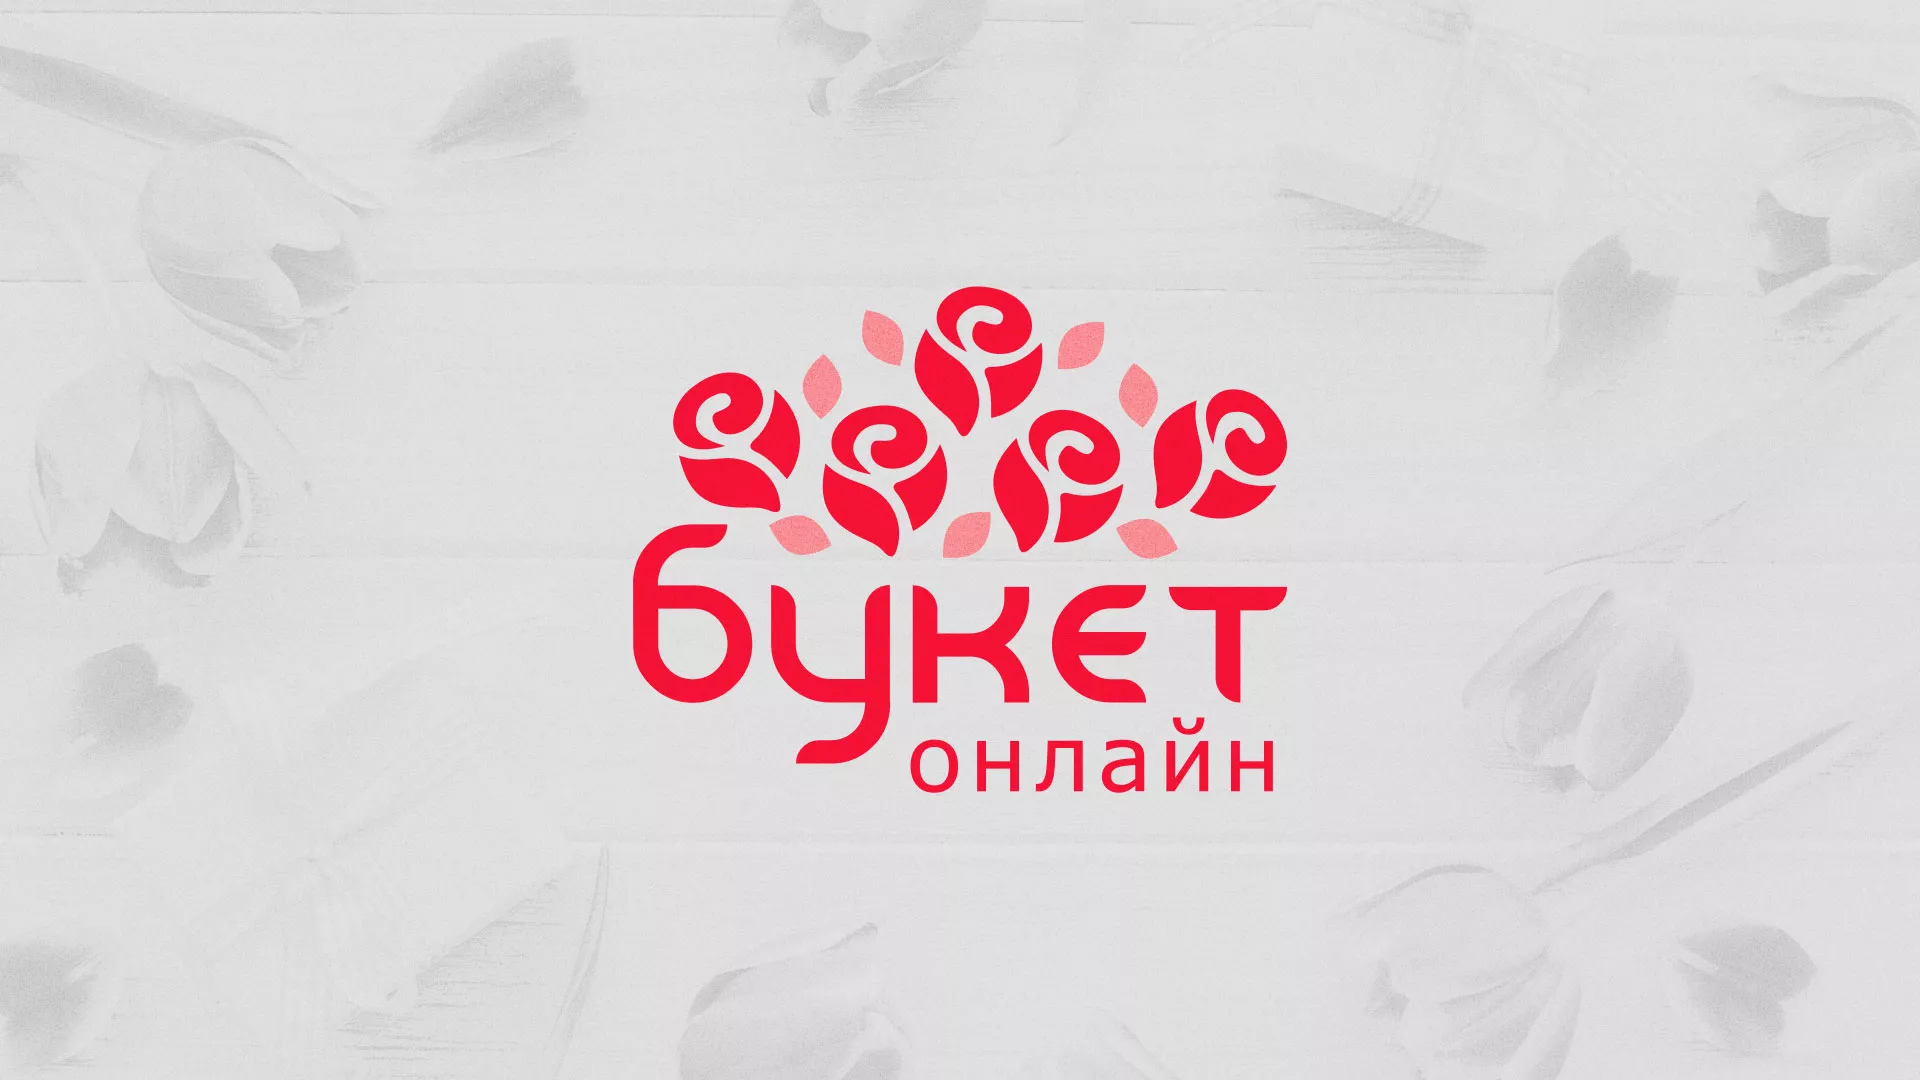 Создание интернет-магазина «Букет-онлайн» по цветам в Луховицах